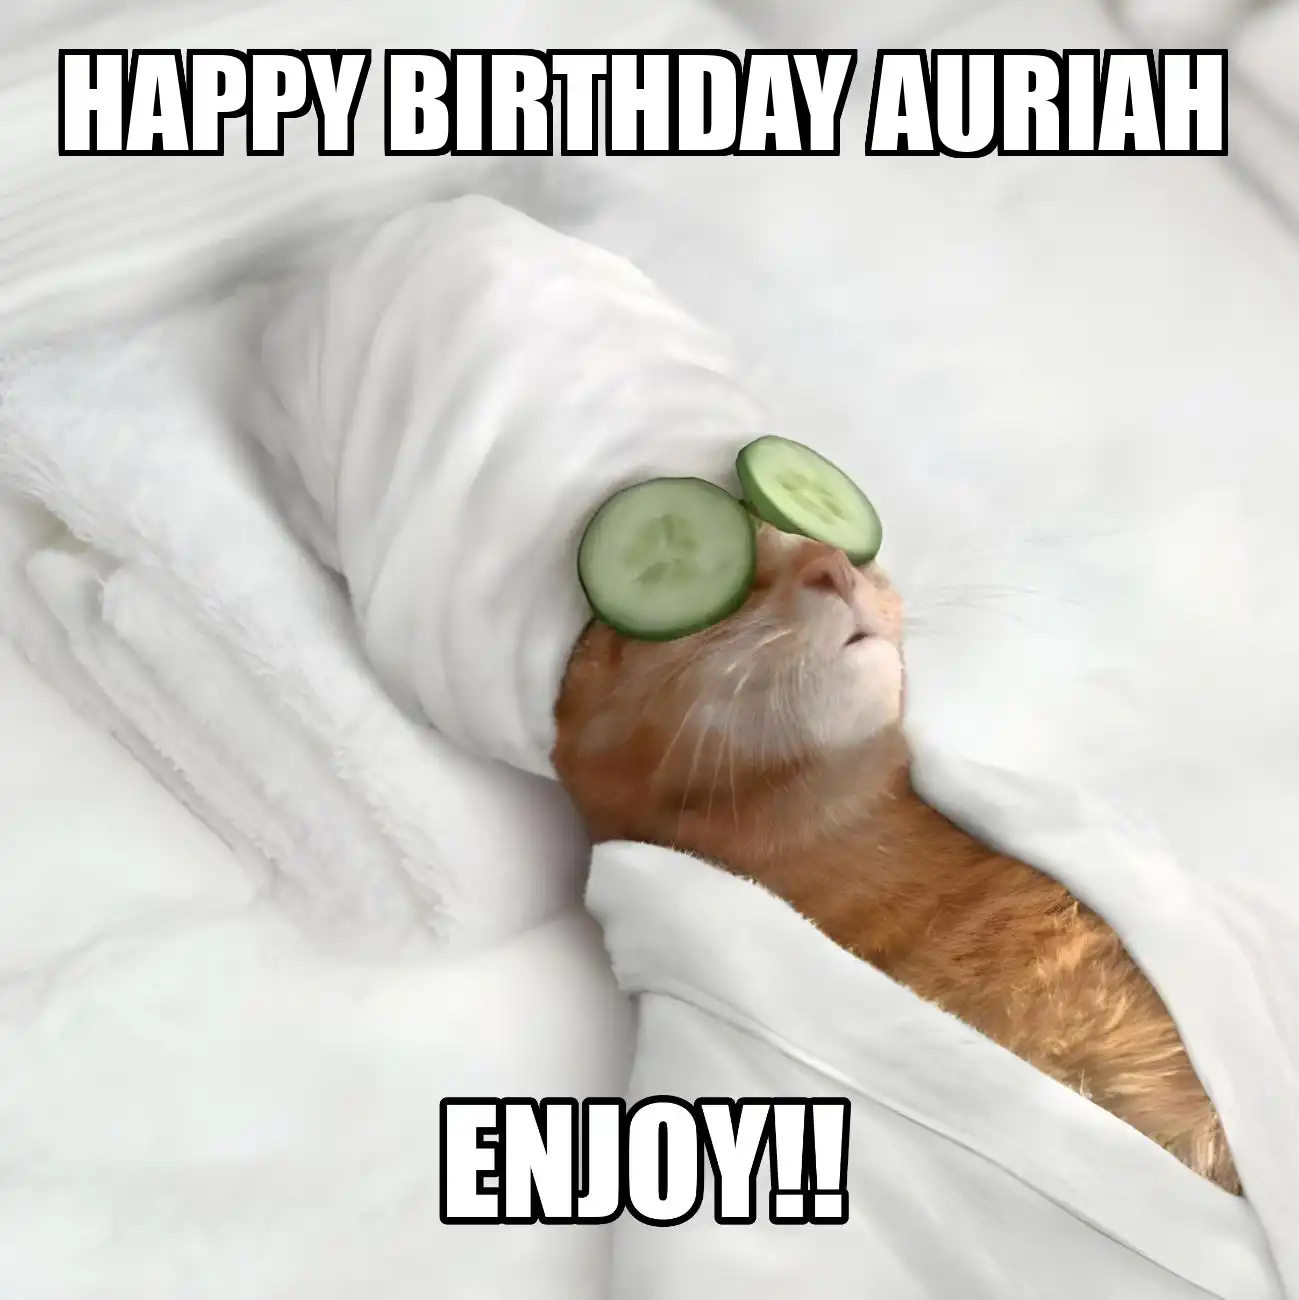 Happy Birthday Auriah Enjoy Cat Meme